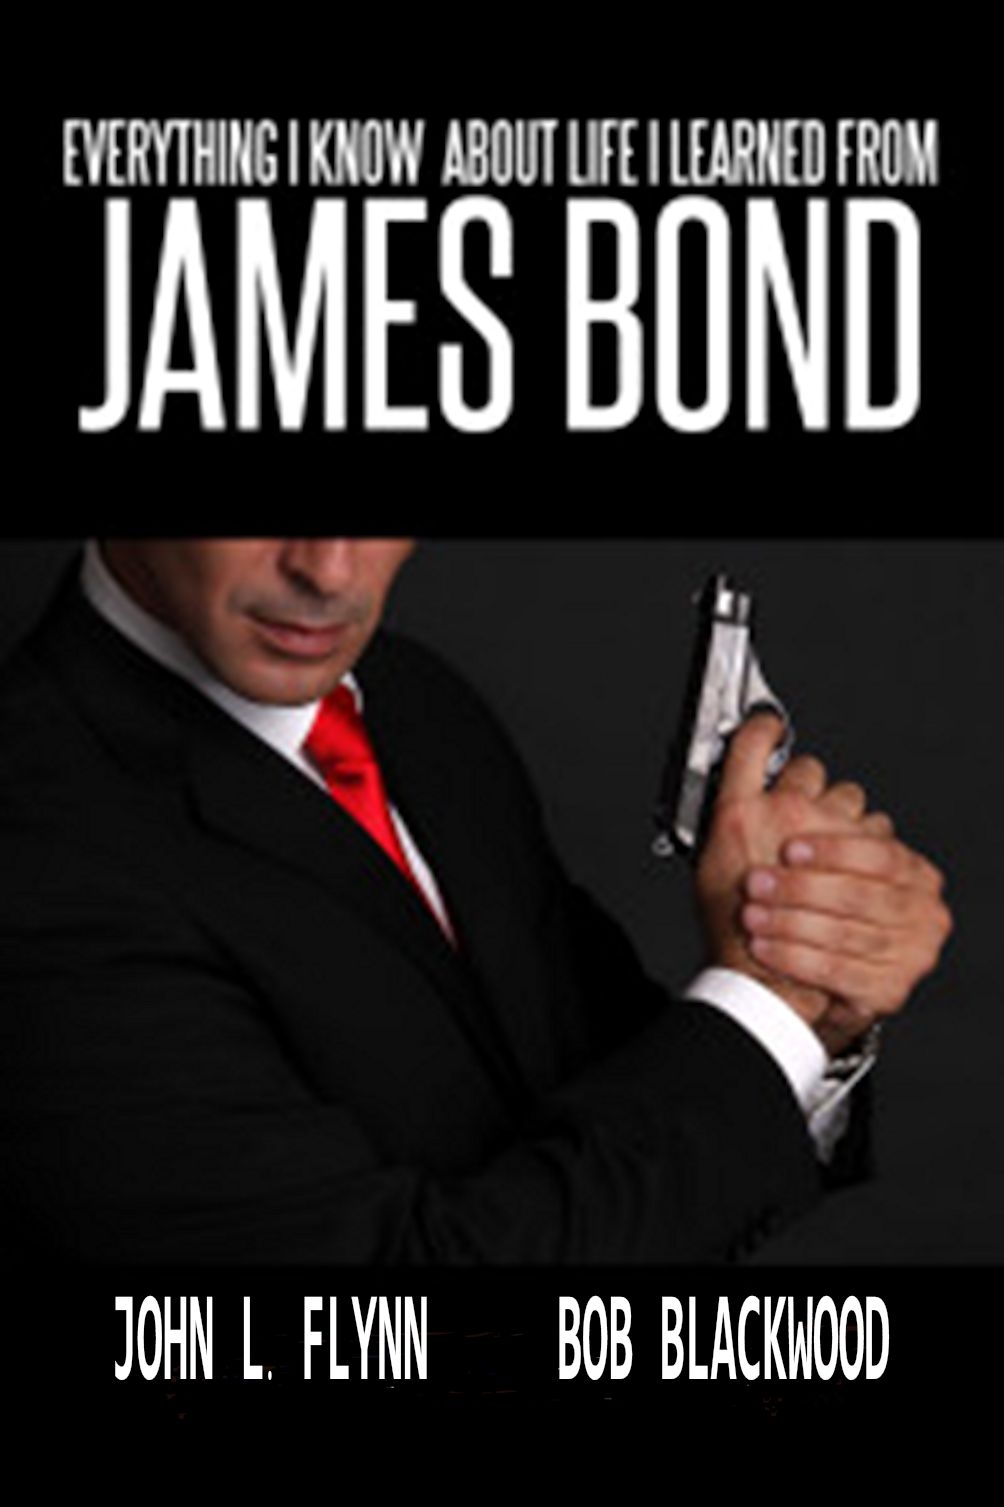 James Bond movies nonfiction book